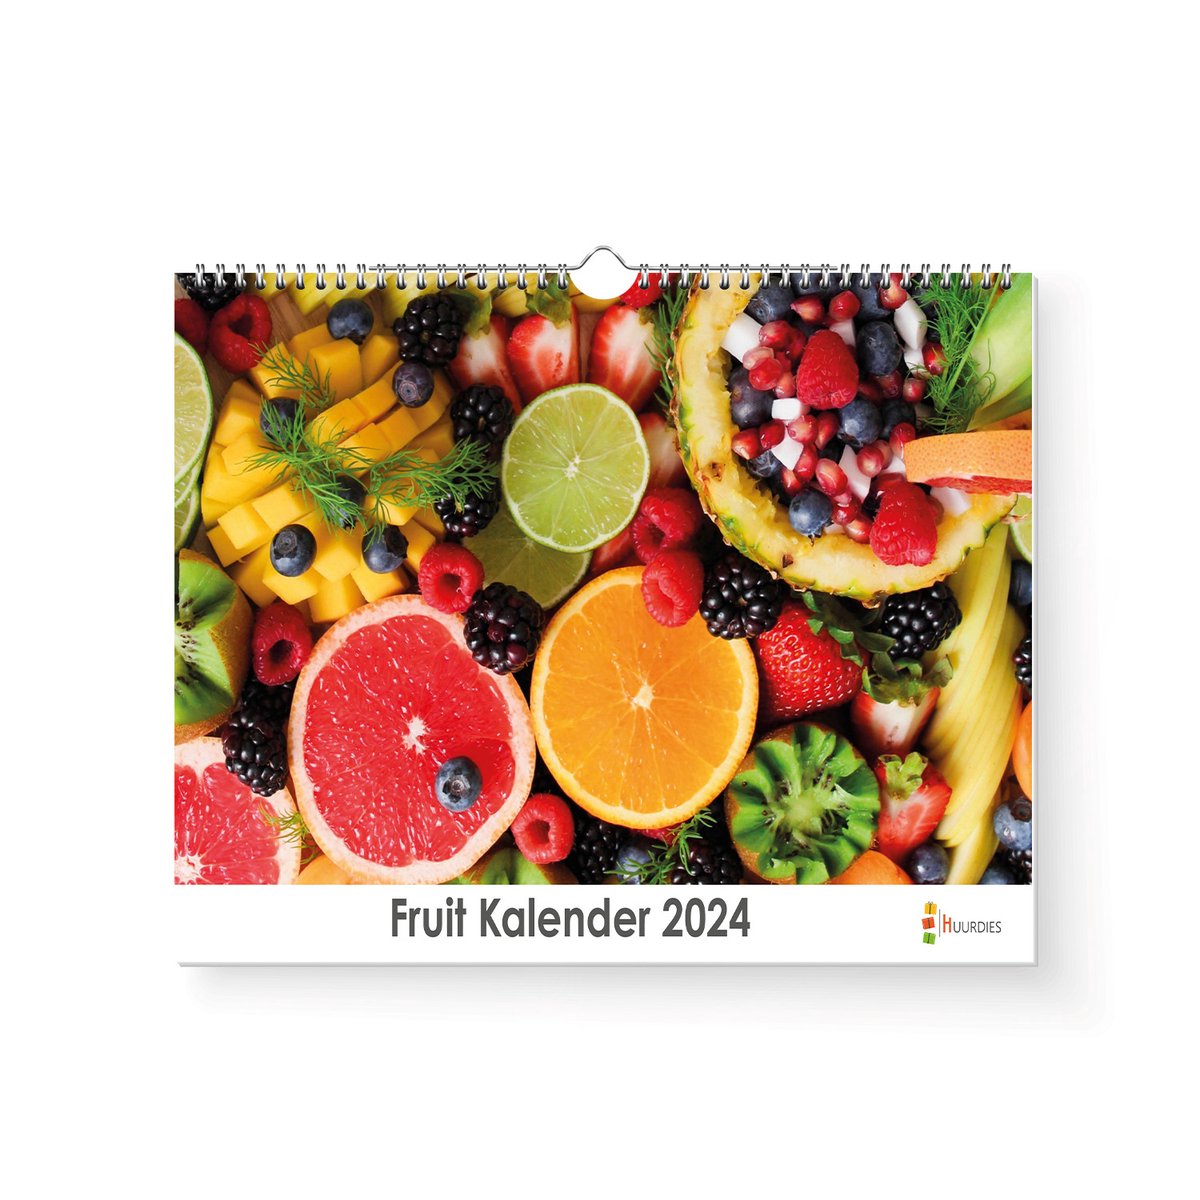 Huurdies - Fruit Kalender - Jaarkalender 2024 - 35x24 - 300gms